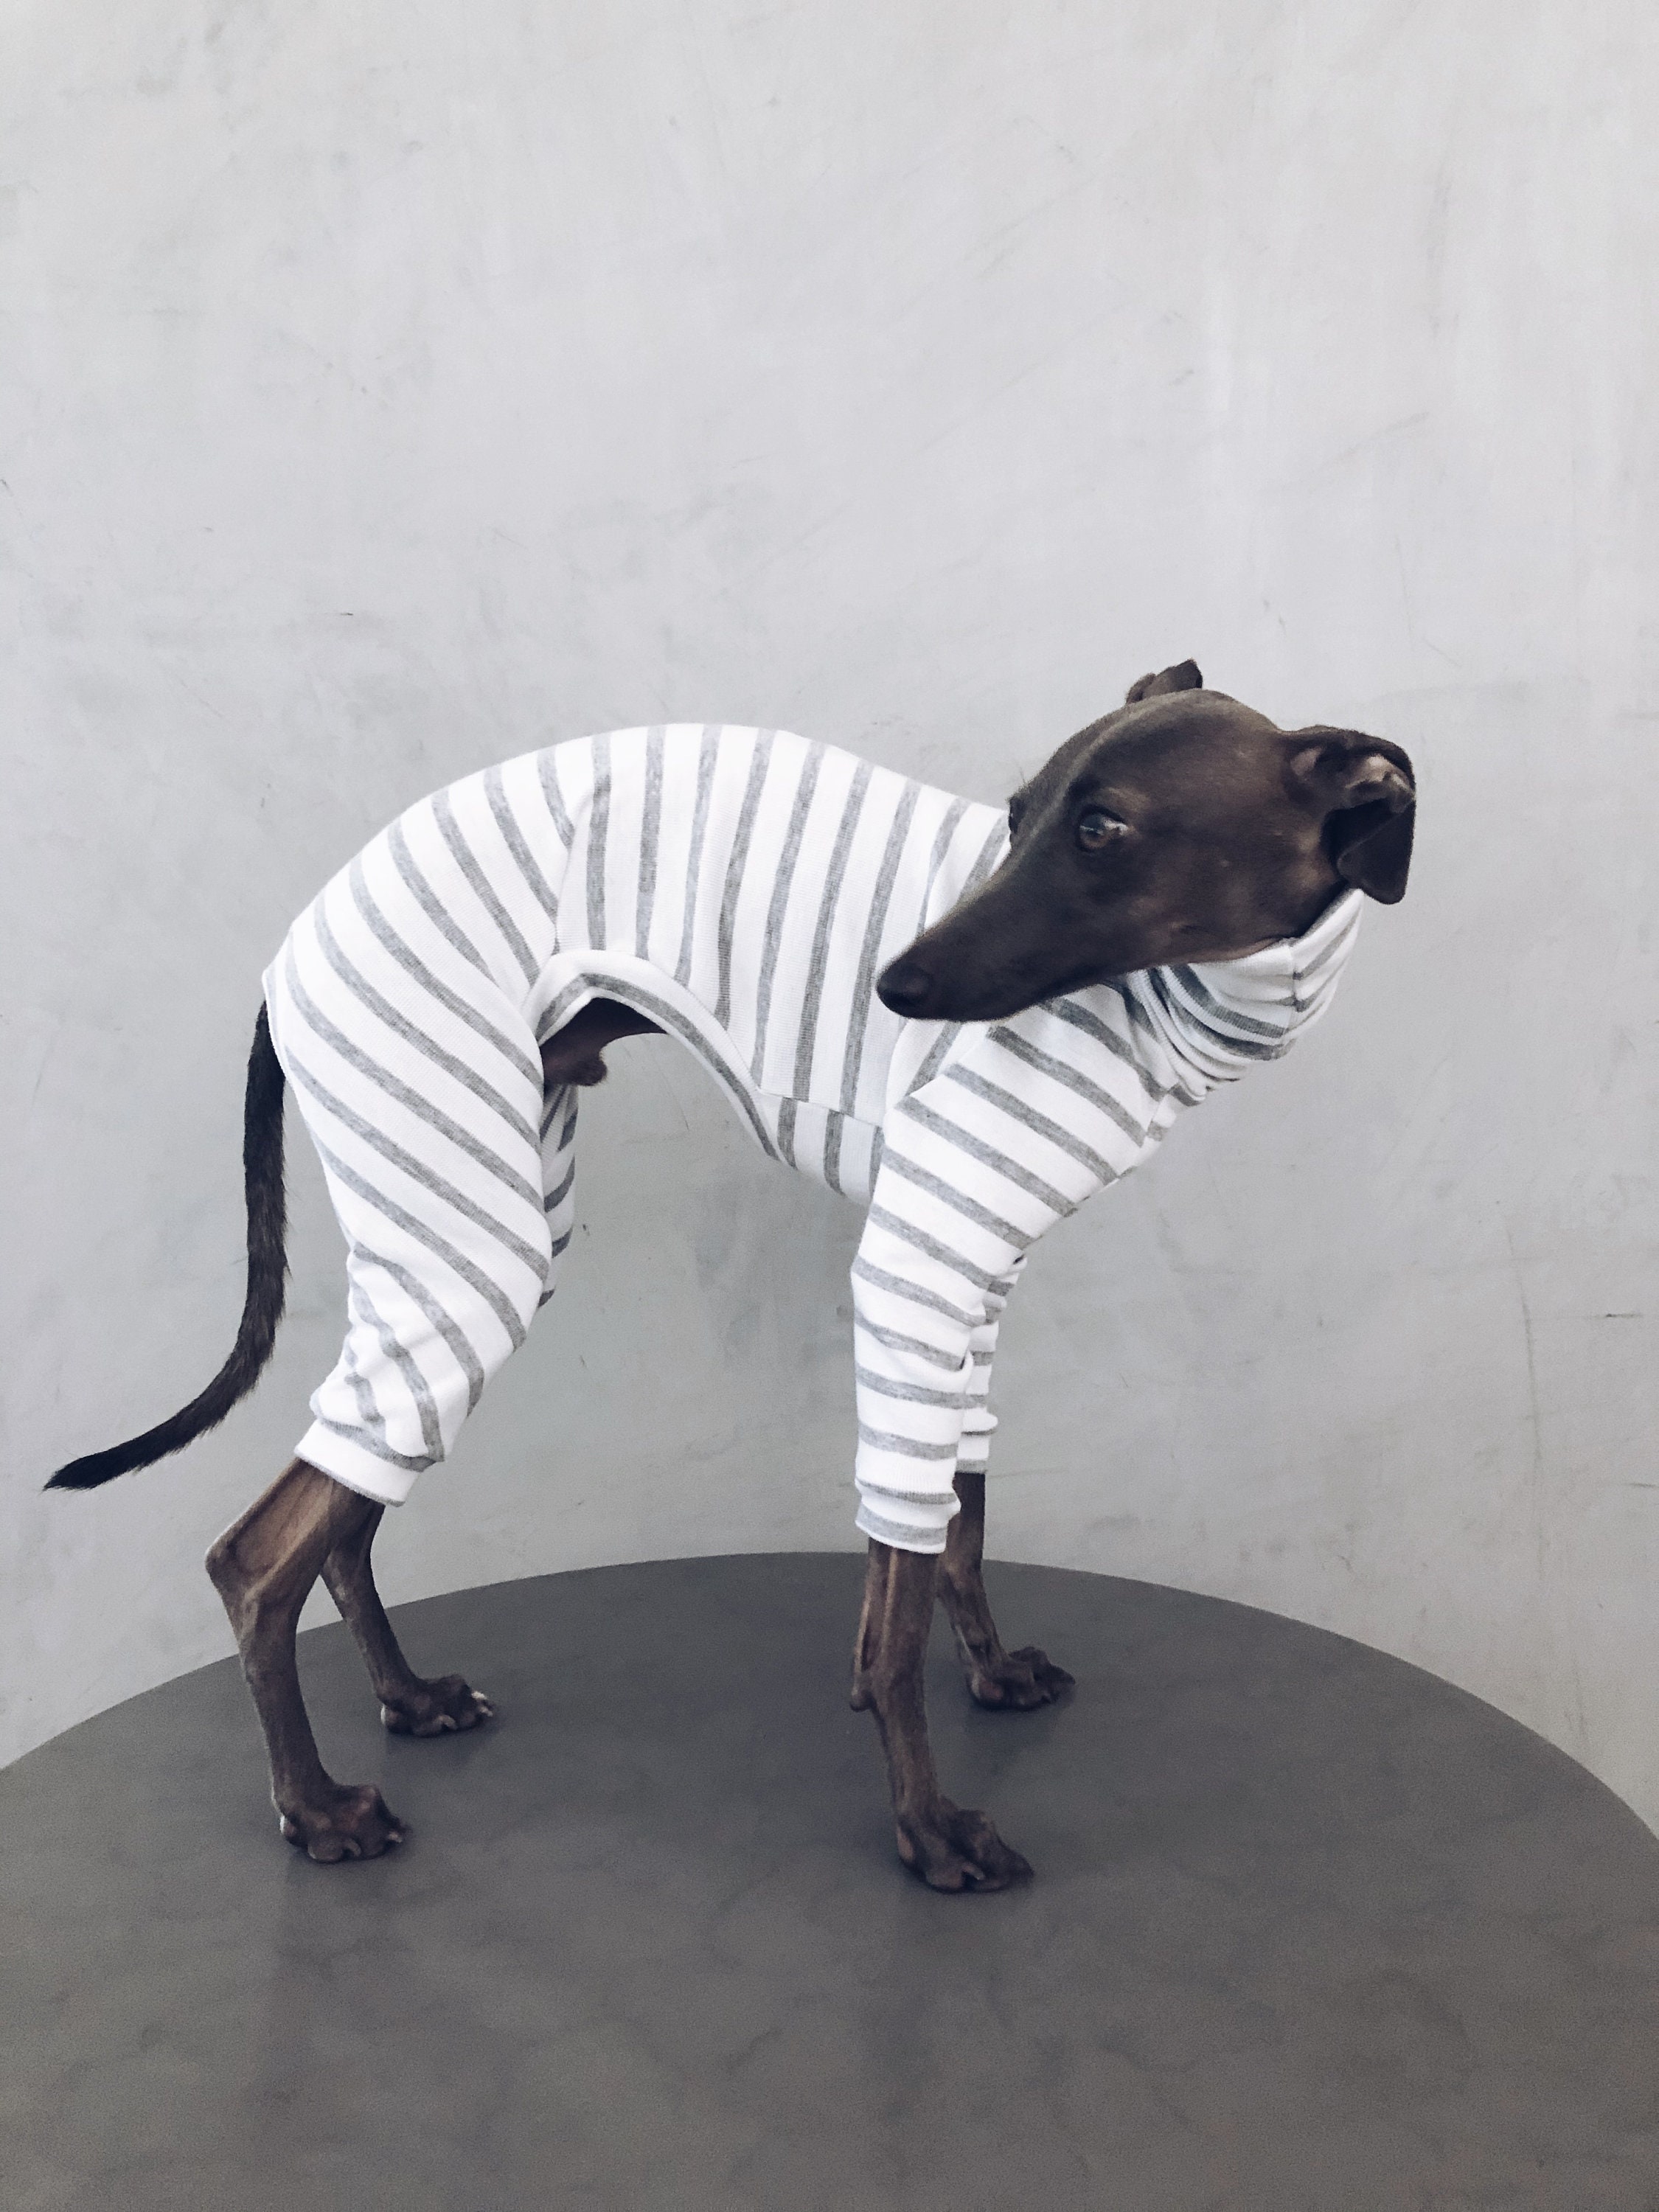 Italian Greyhound Clothes / Iggy Jumpsuit Dog - Etsy